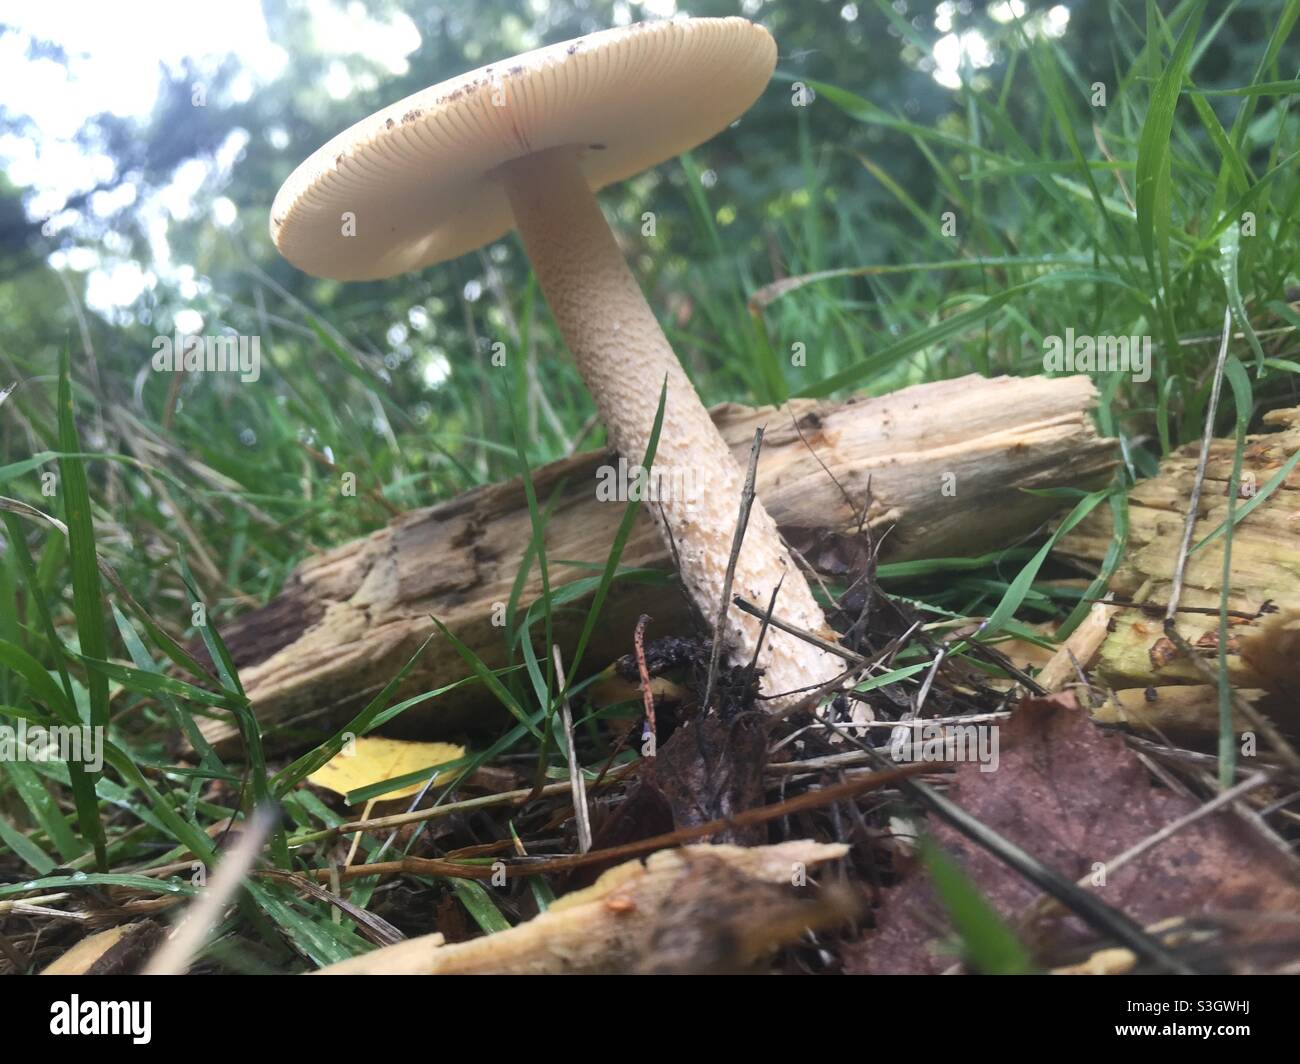 White mushroom in grass on forest floor Stock Photo